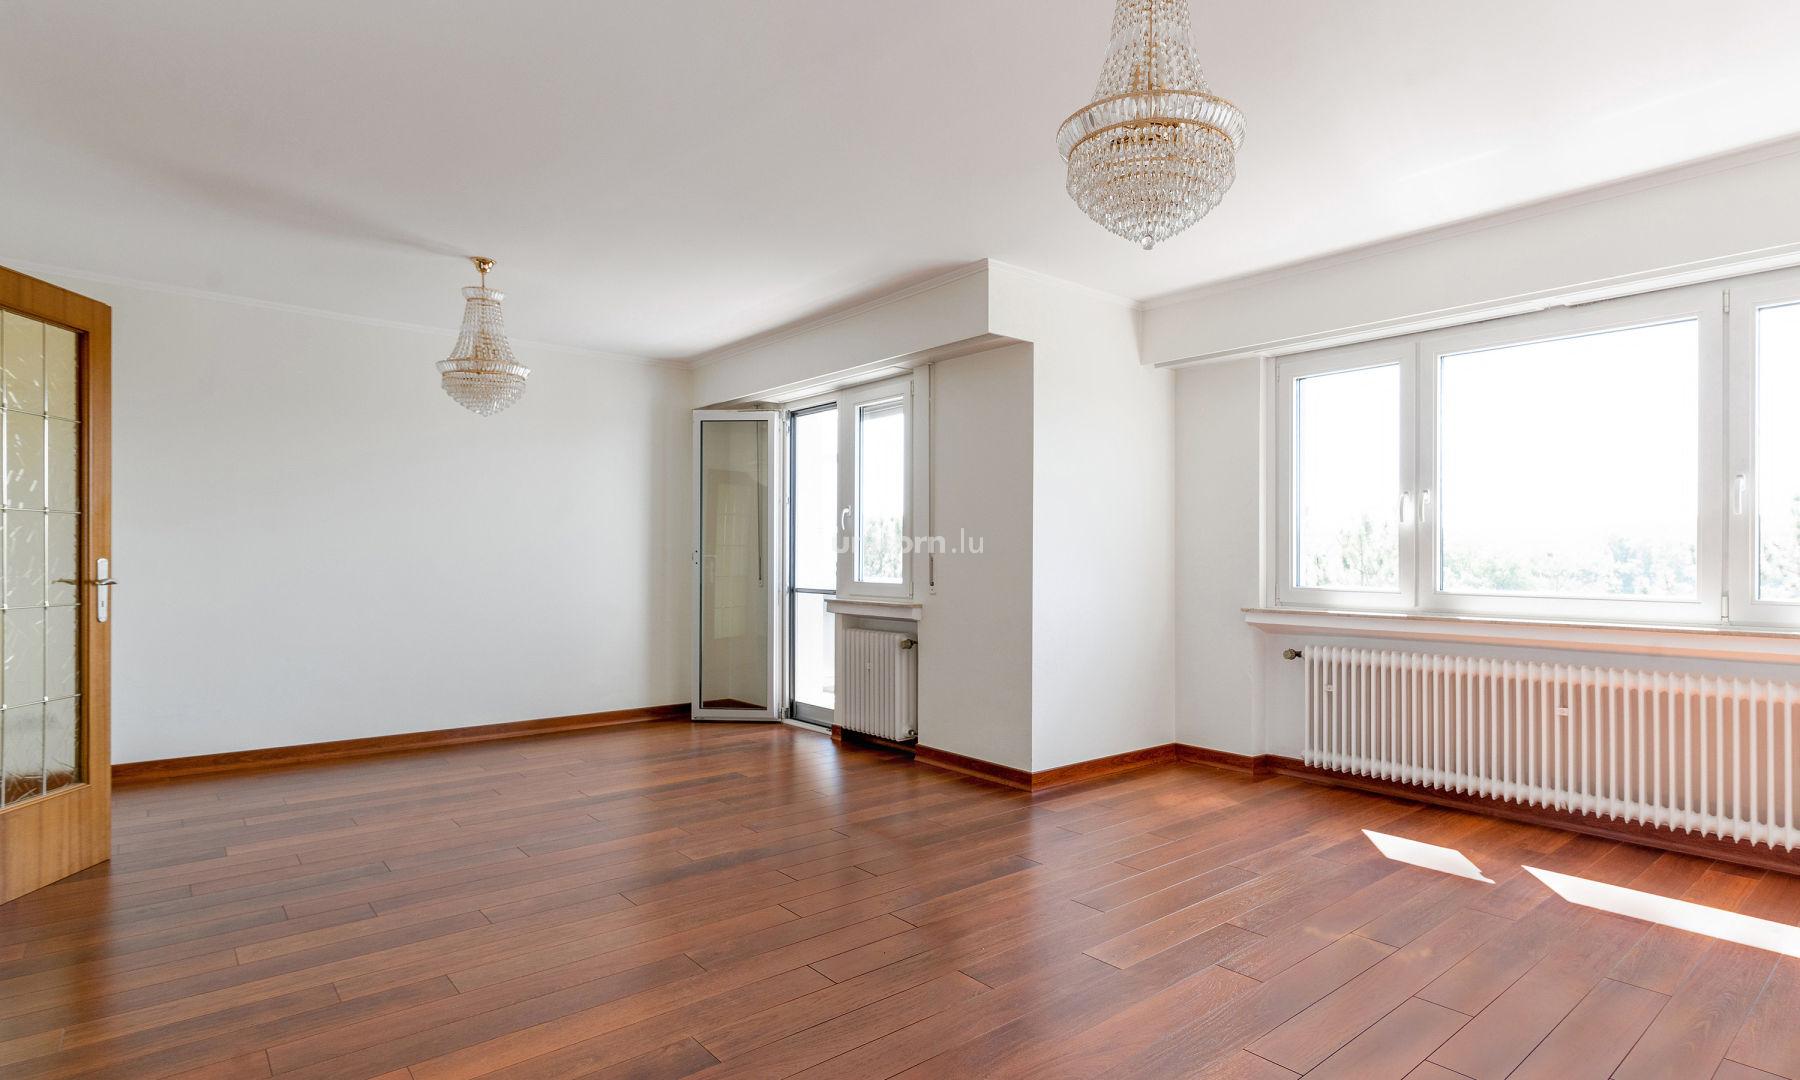 Appartement en vente à Bertrange  - 95m²